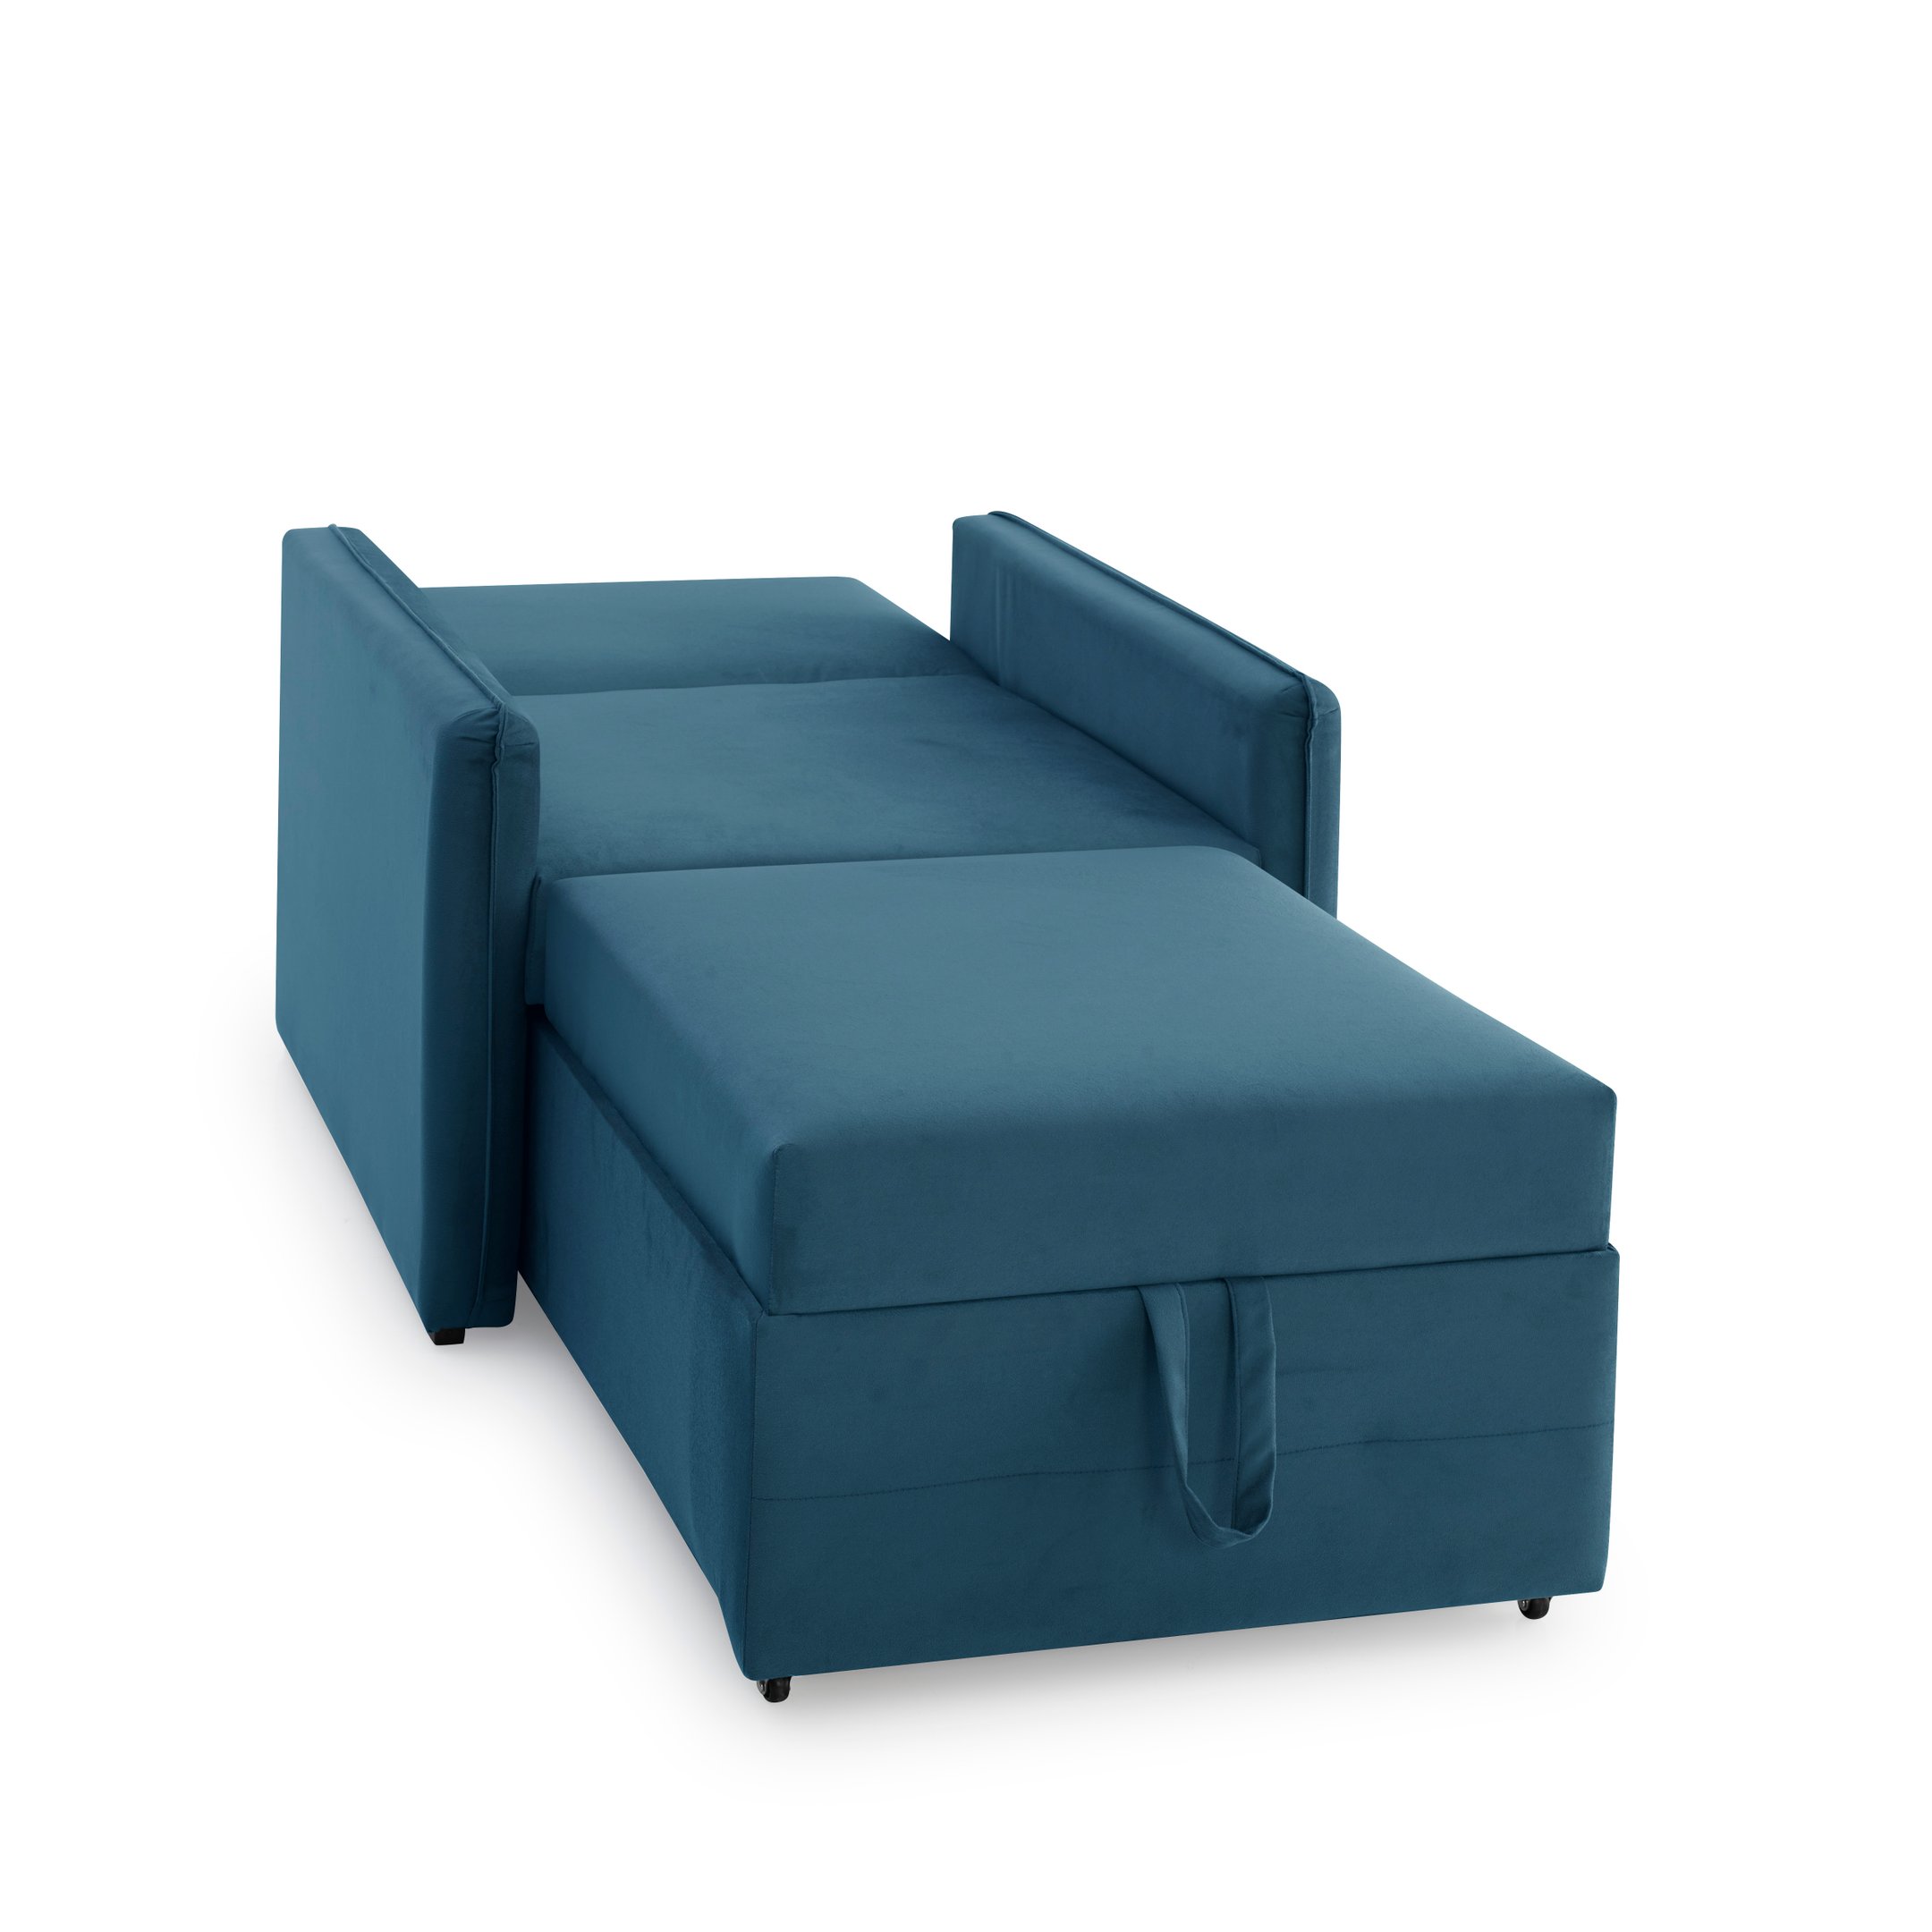 Poltrona Icaria 3 em 1 Poltrona Chaise Cama Azul Estofama - 7